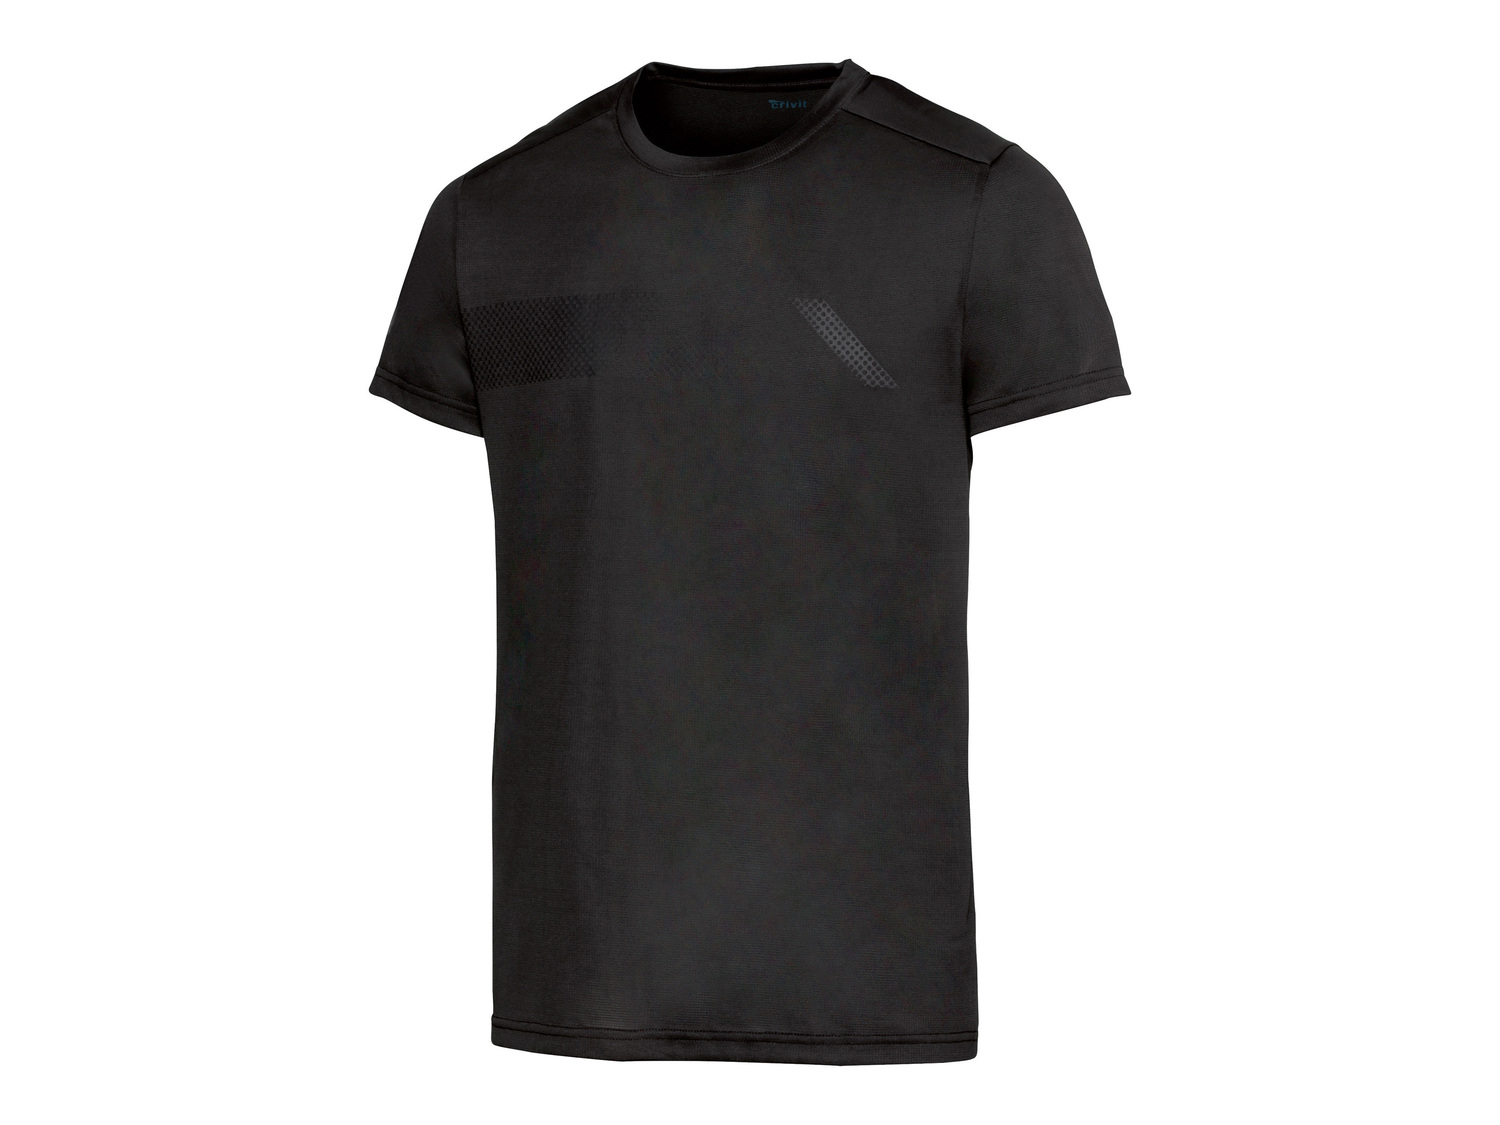 T-shirt sportiva da uomo Crivit, prezzo 4.99 &#8364; 
Misure: M-XL
Caratteristiche

- ...